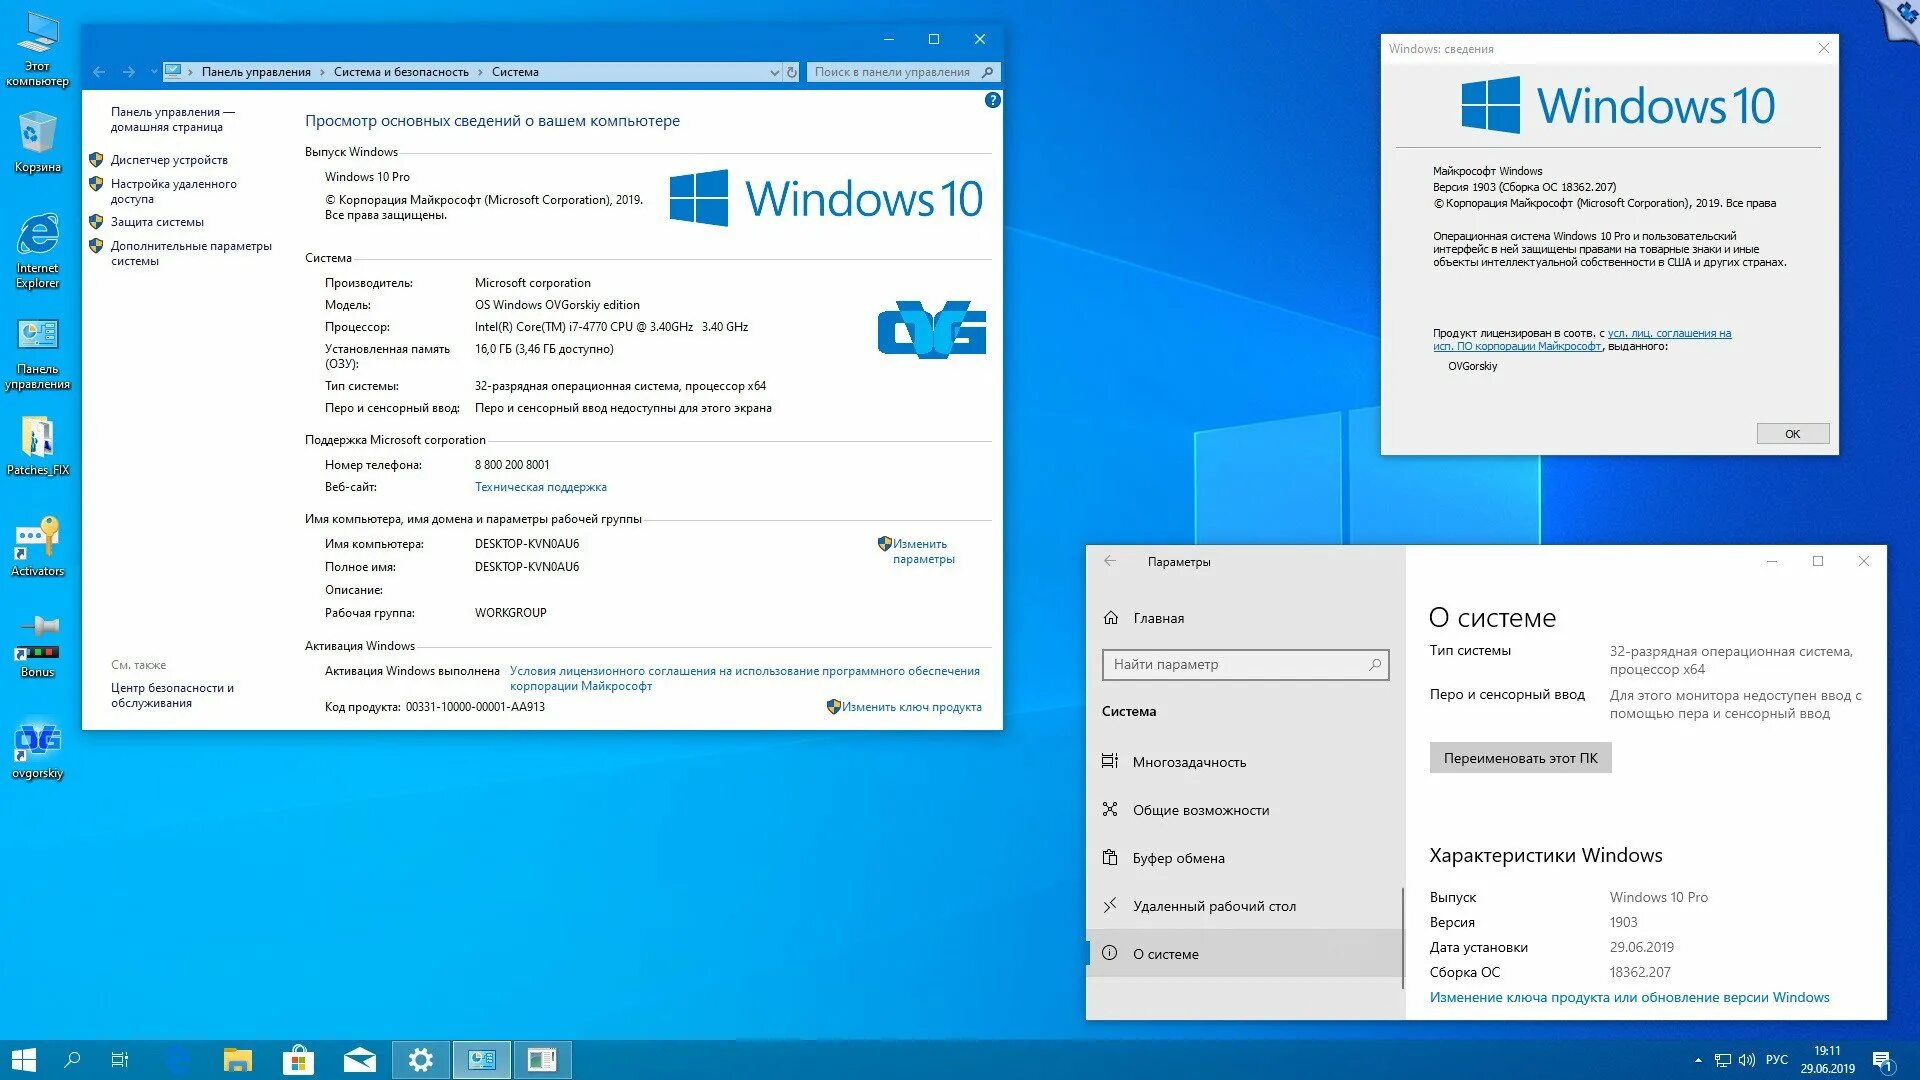 X64 Операционная система. Windows 10 Pro. Операционная система Windows 10. Х64 разрядная Операционная система.